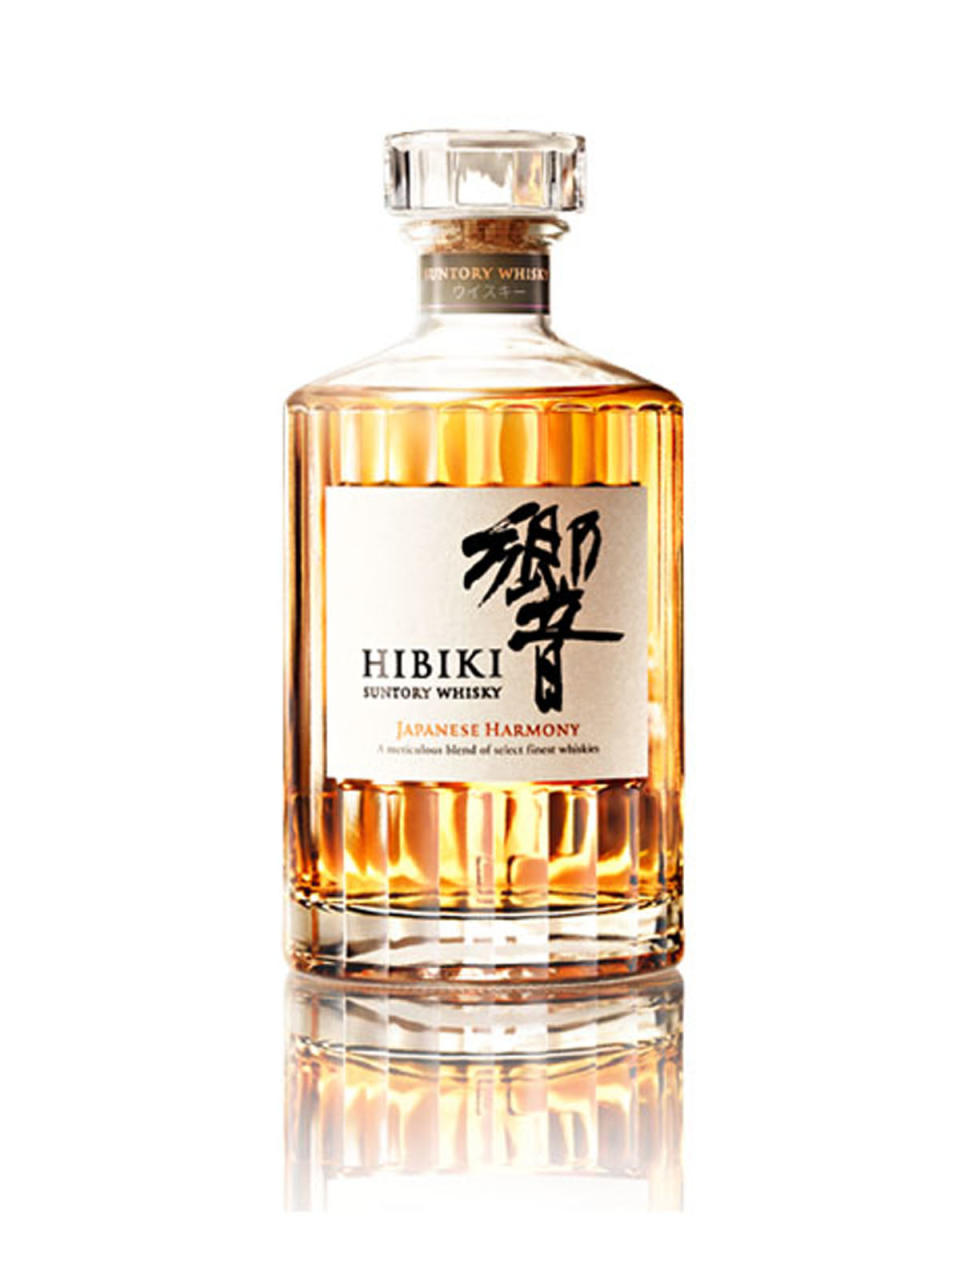 【日本威士忌】響Hibiki威士忌介紹：核心作品價錢/日本和諧風味代表